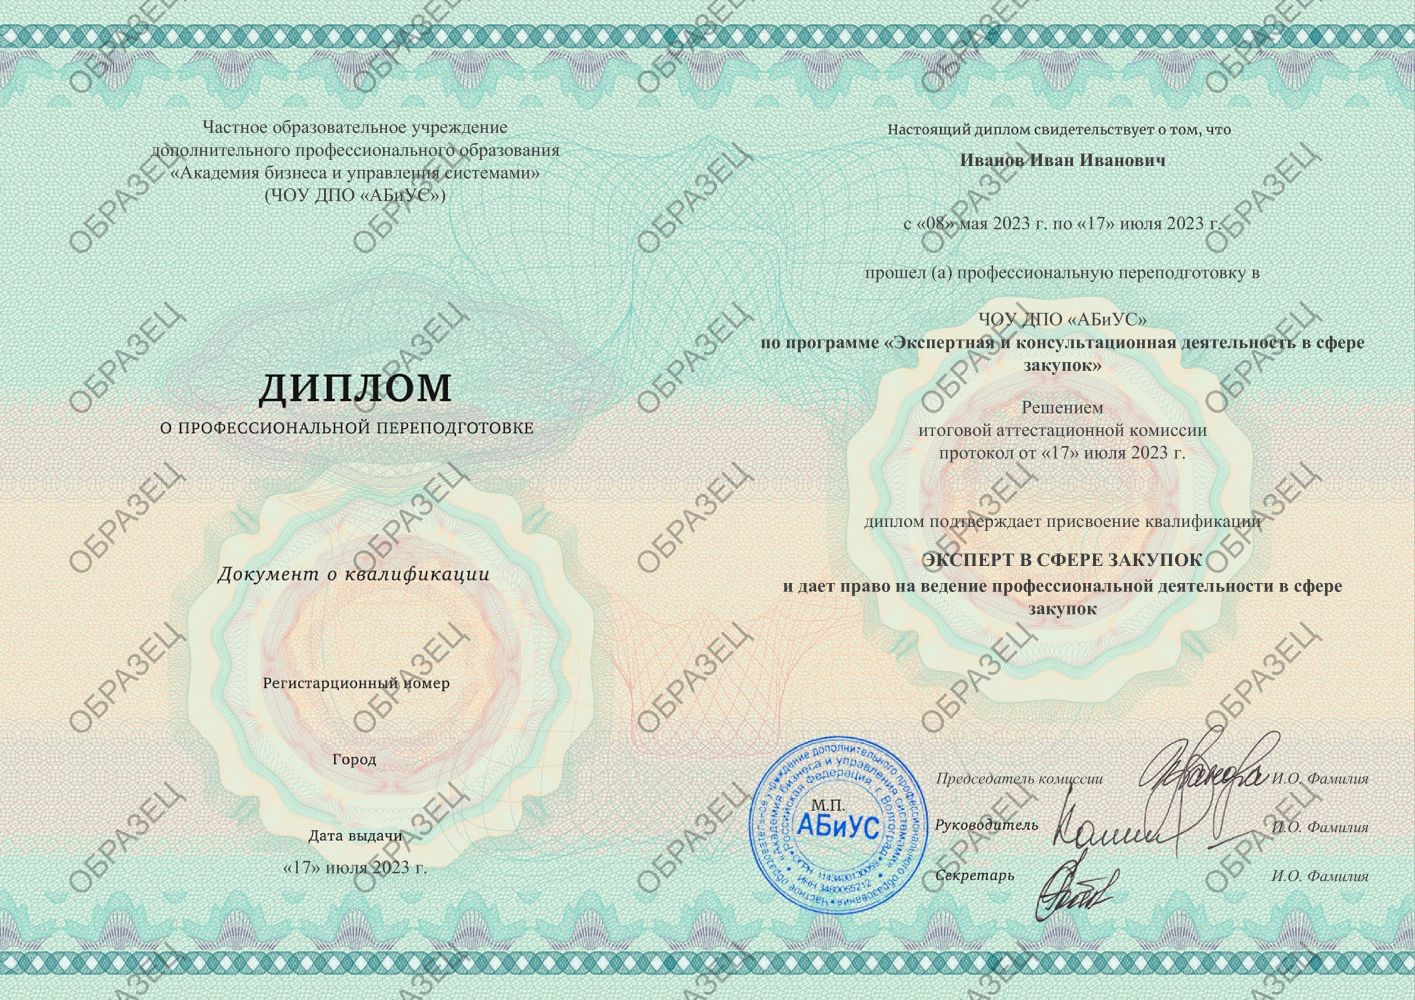 Диплом Экспертная и консультационная деятельность в сфере закупок 260 часов 11813 руб.